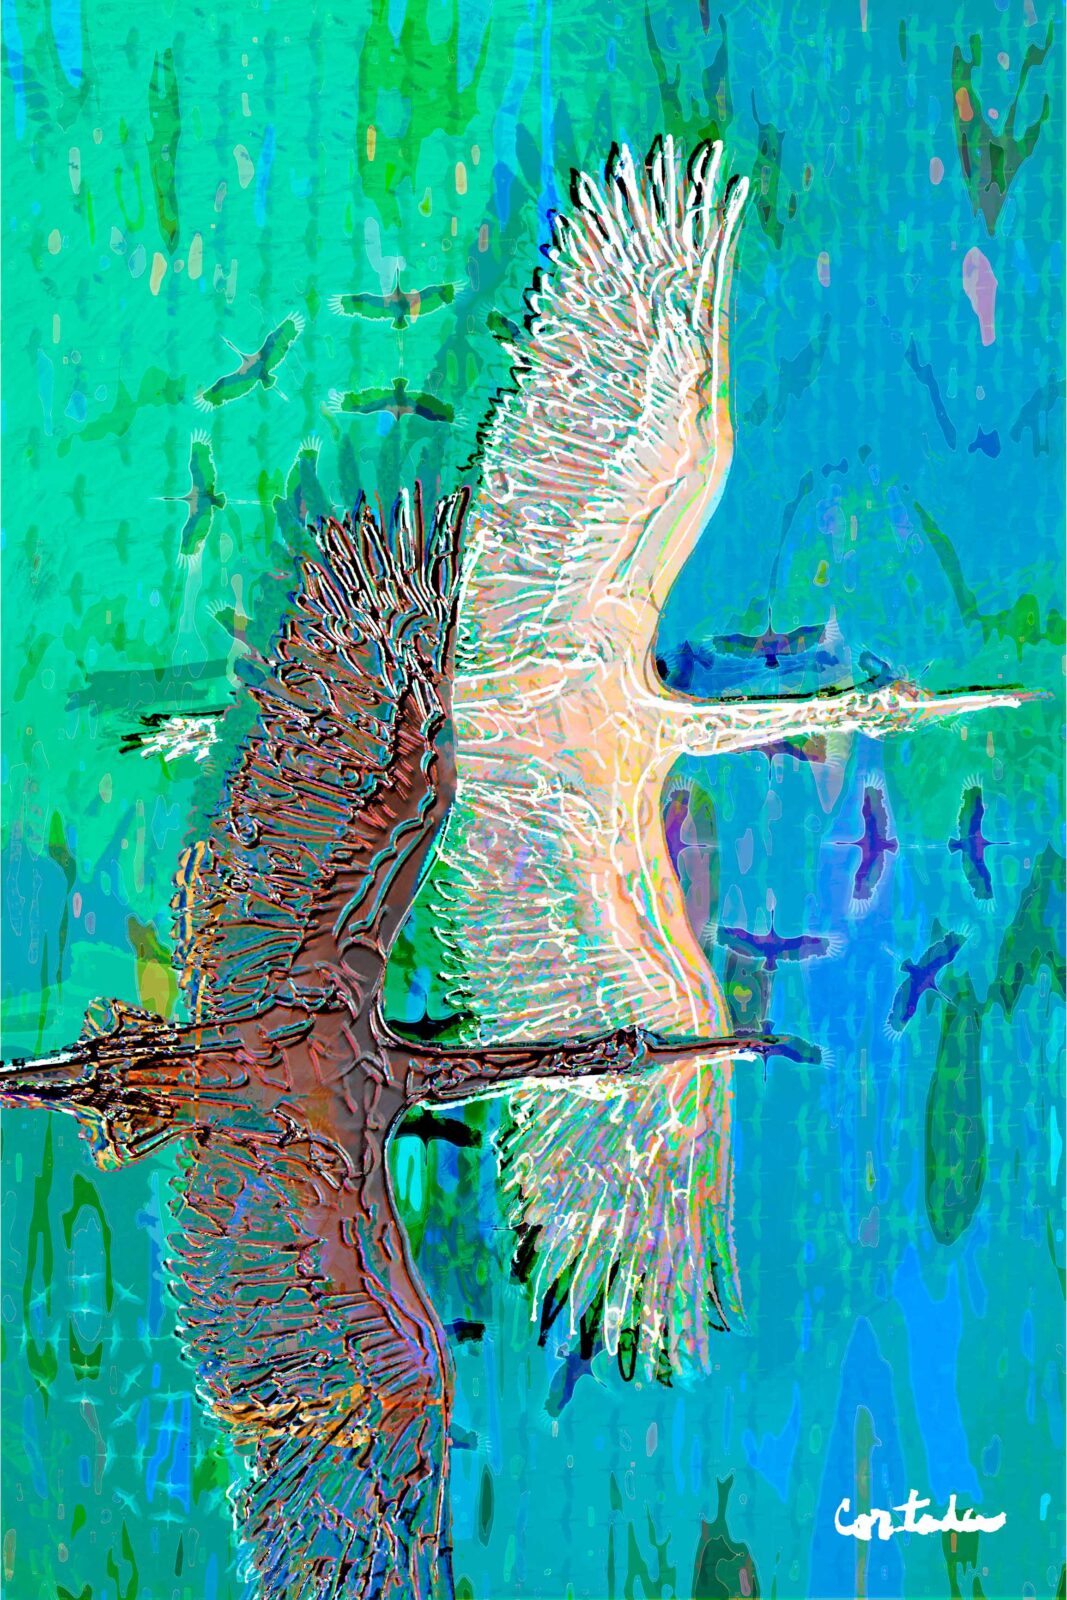 Xavier Cortada, “(Florida is…) Wood storks,